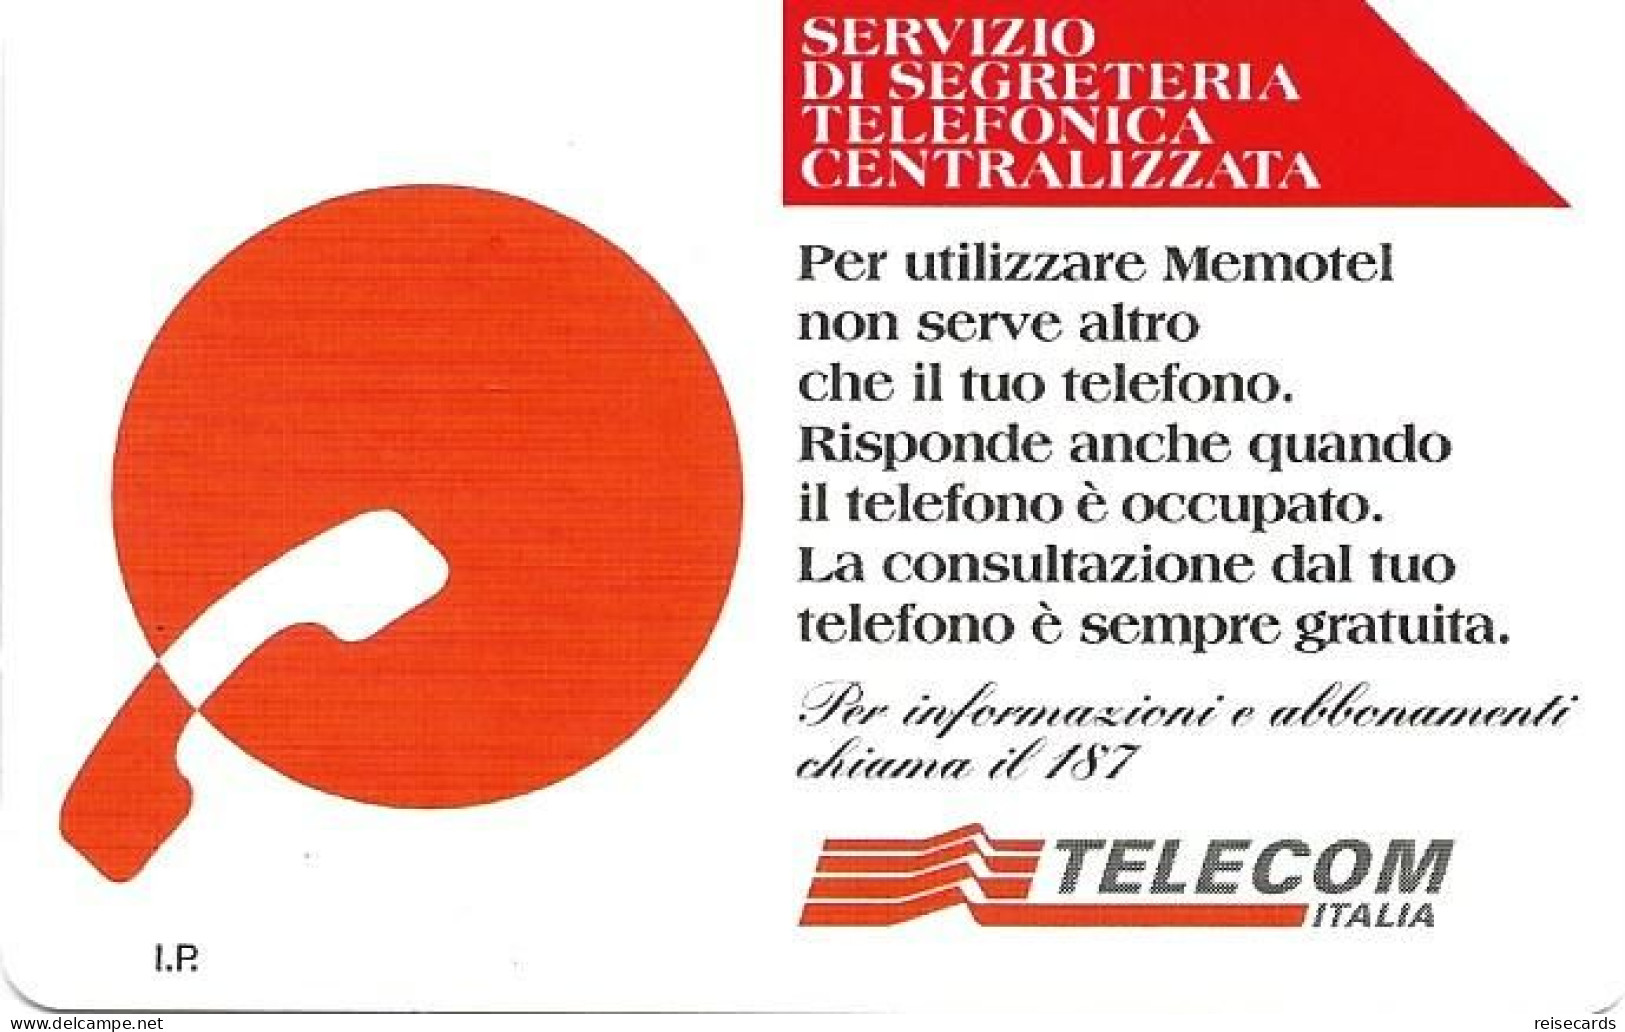 Italy: Telecom Italia - Servizio Di Segreteria Telefonica Centralizzata - Openbare Reclame